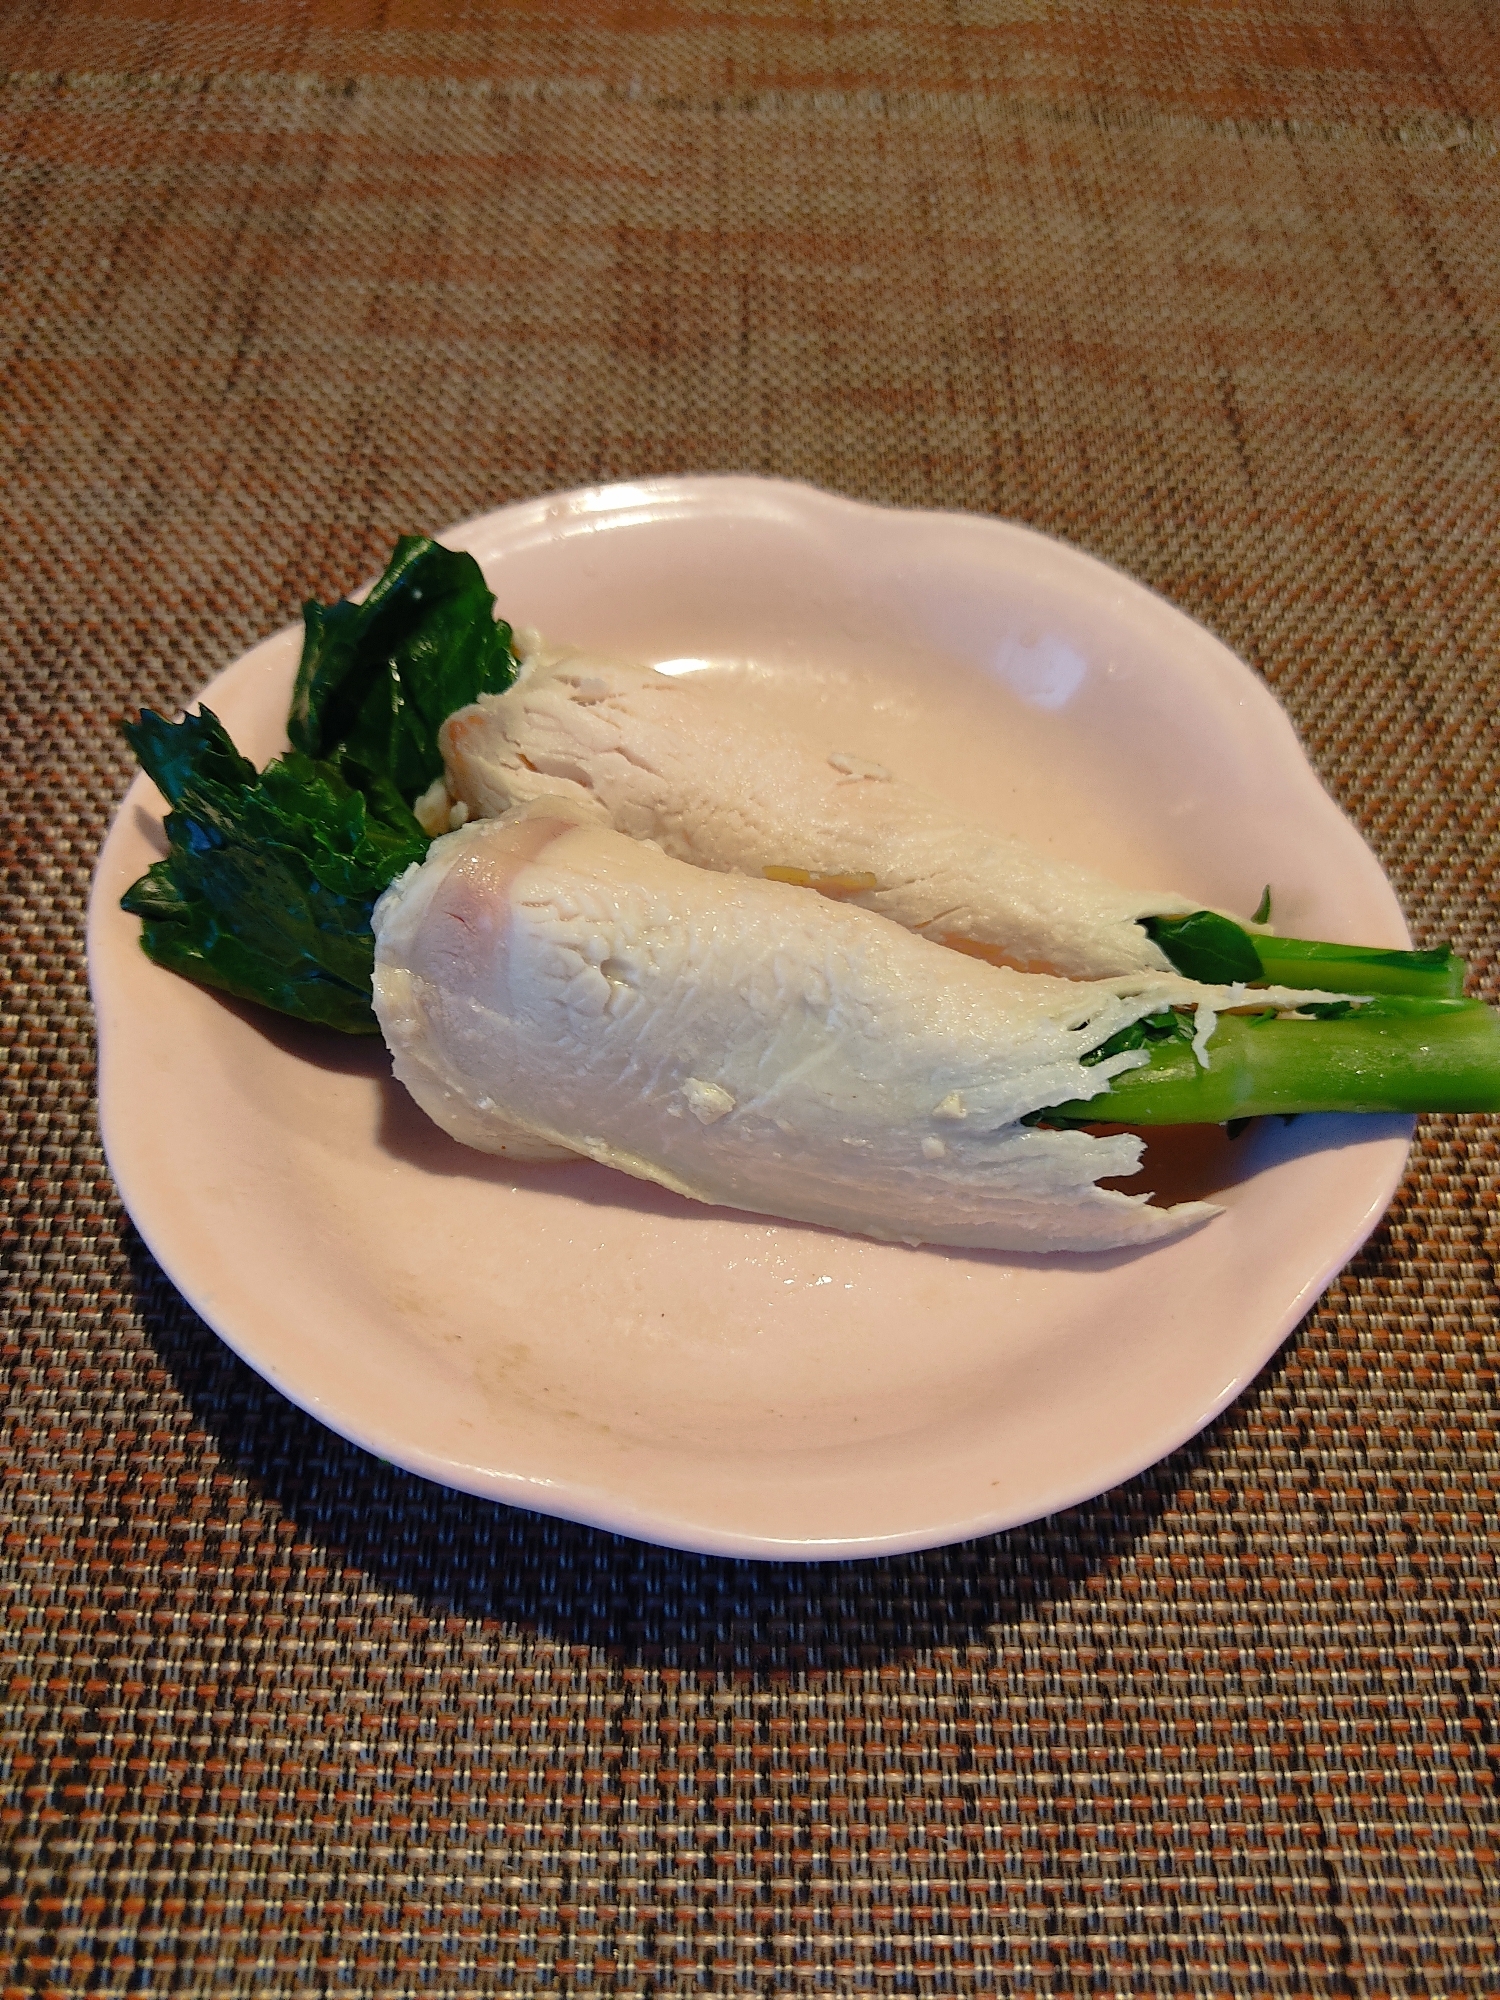 塩ゆでのらぼう菜の鶏ハム巻